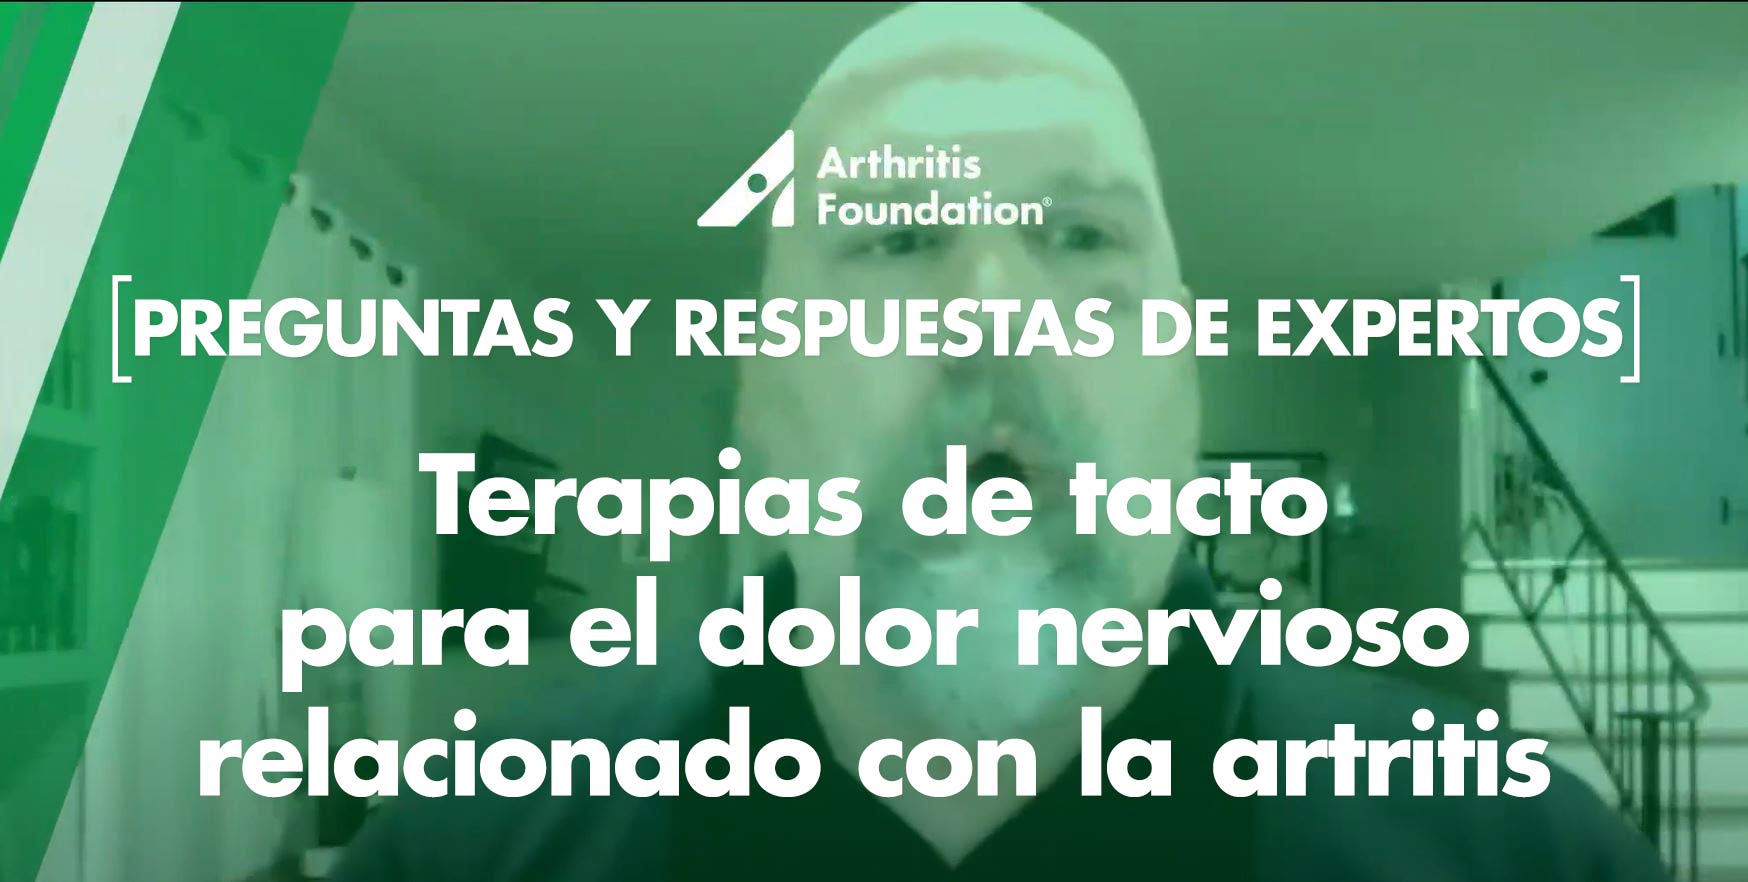 Preguntas y respuestas de expertos: Fisioterapia y terapia de tacto para el dolor nervioso relacionada con la artritis